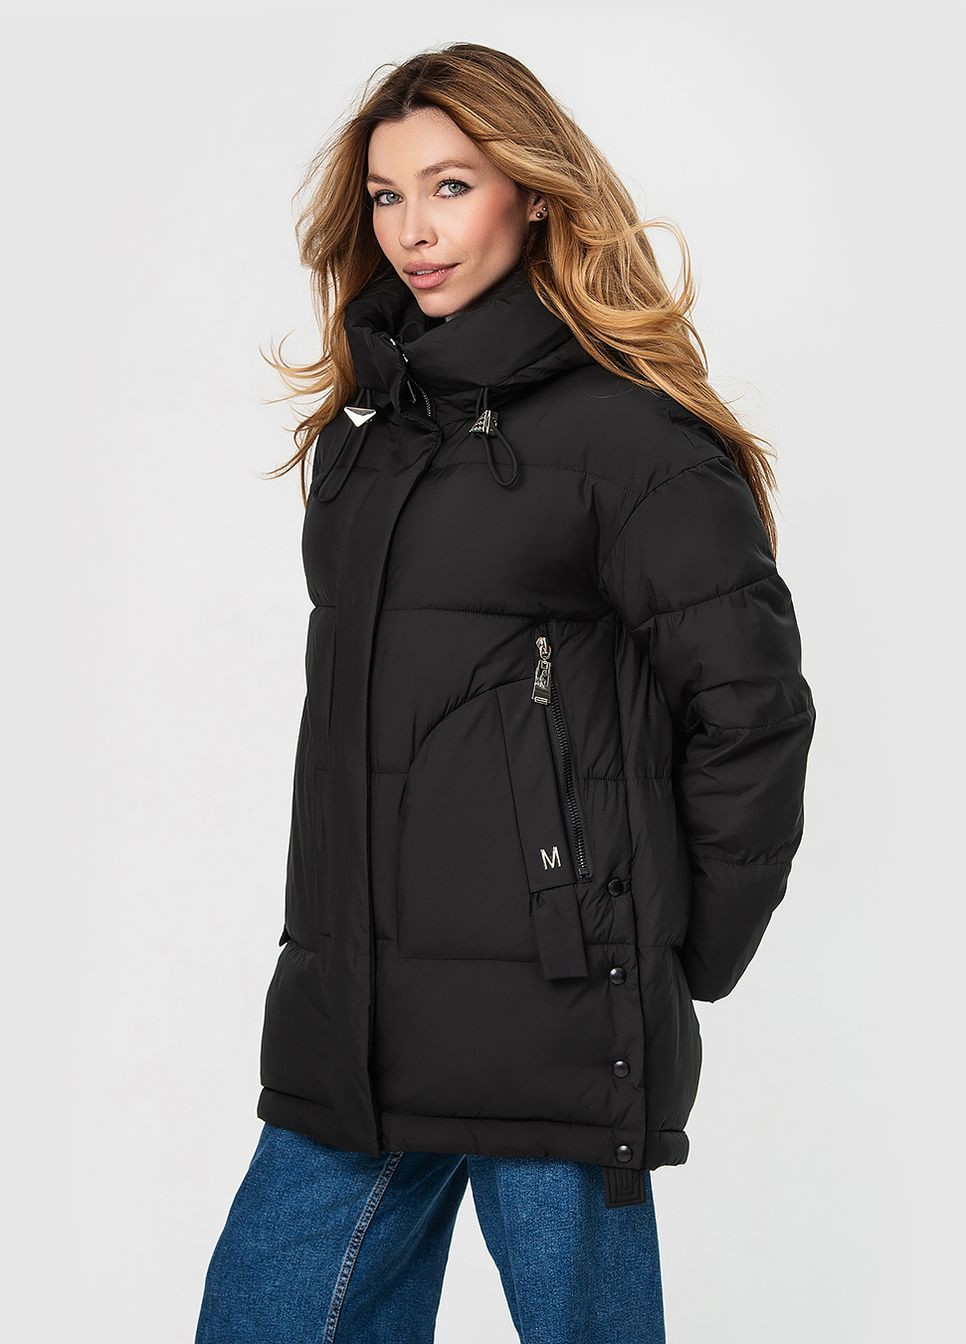 Чорна зимня куртка з капюшоном модель Visdeer 3168